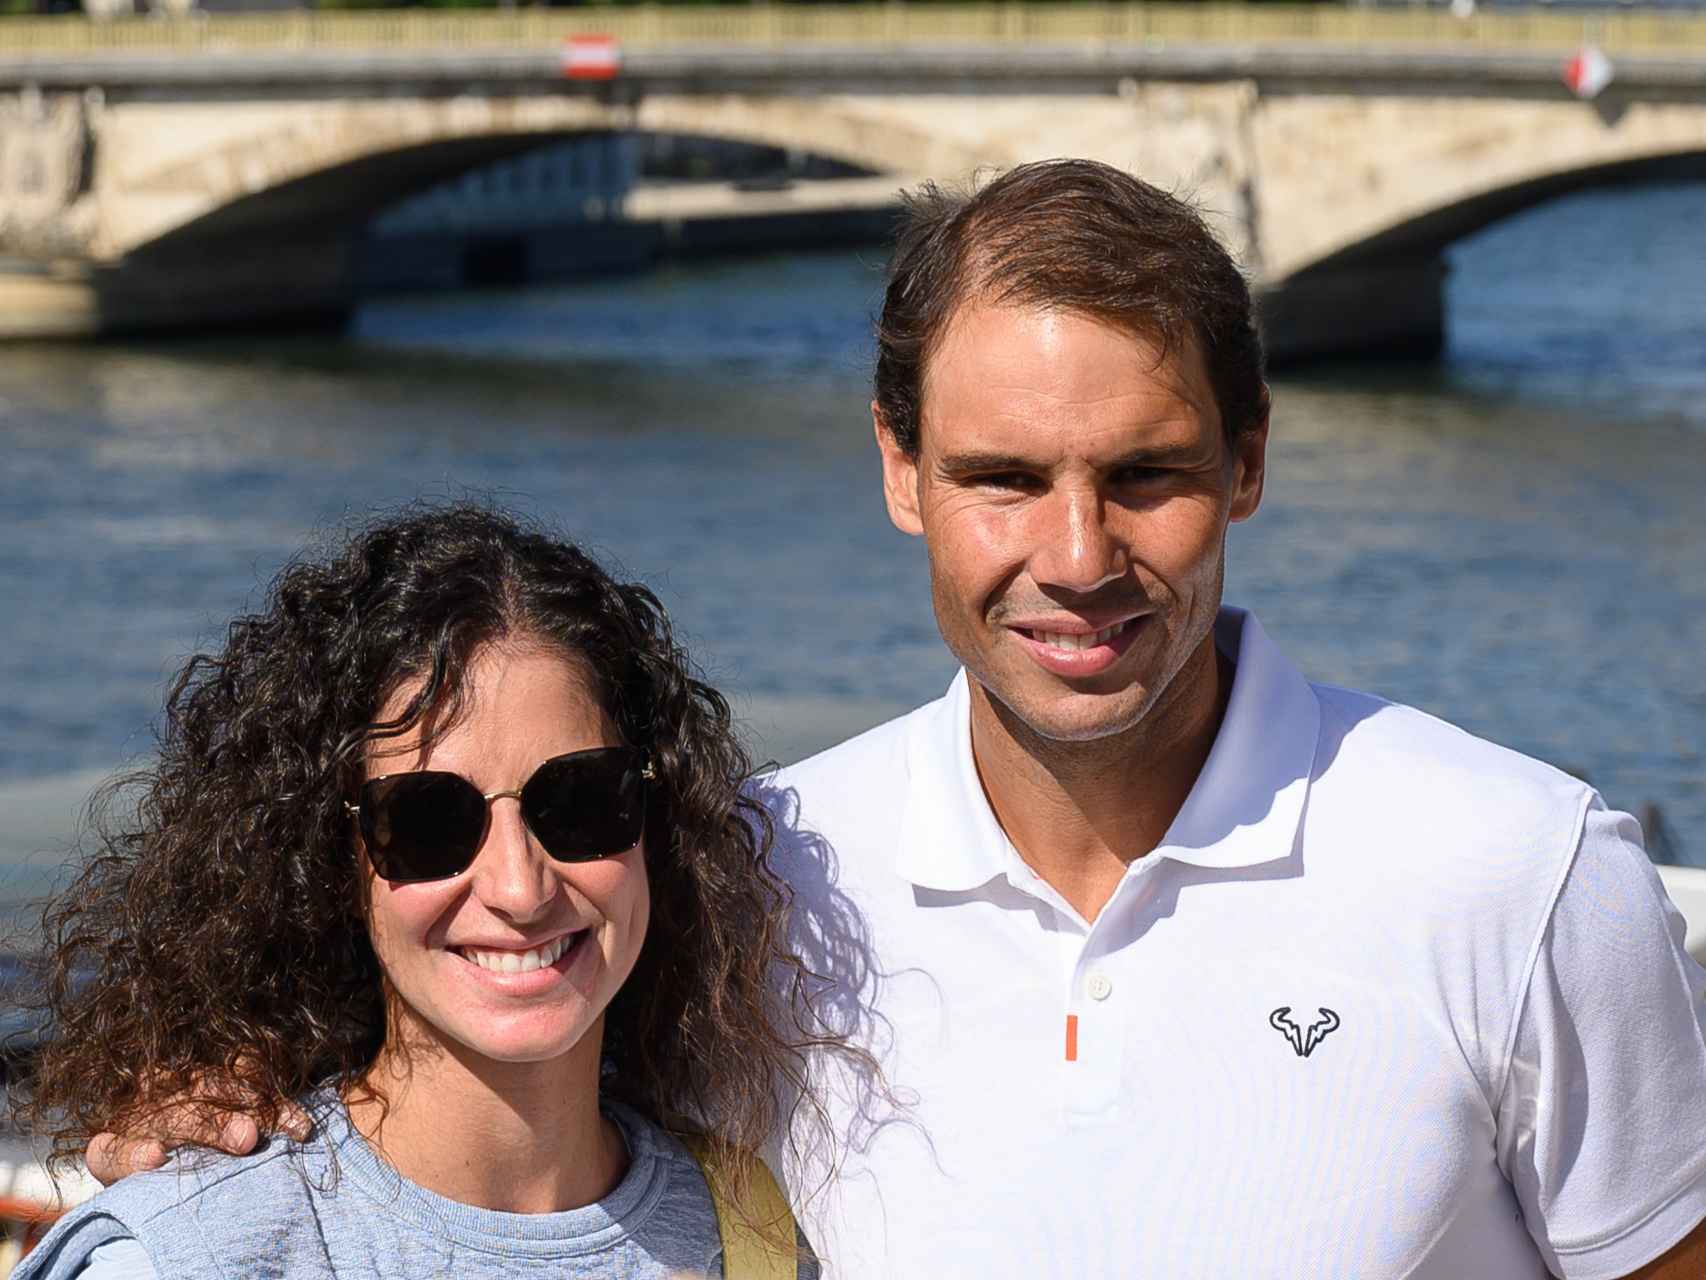 El matrimonio formado por Rafa y Xisca en una imagen tomada en París, durante el Roland Garros de junio de 2022.